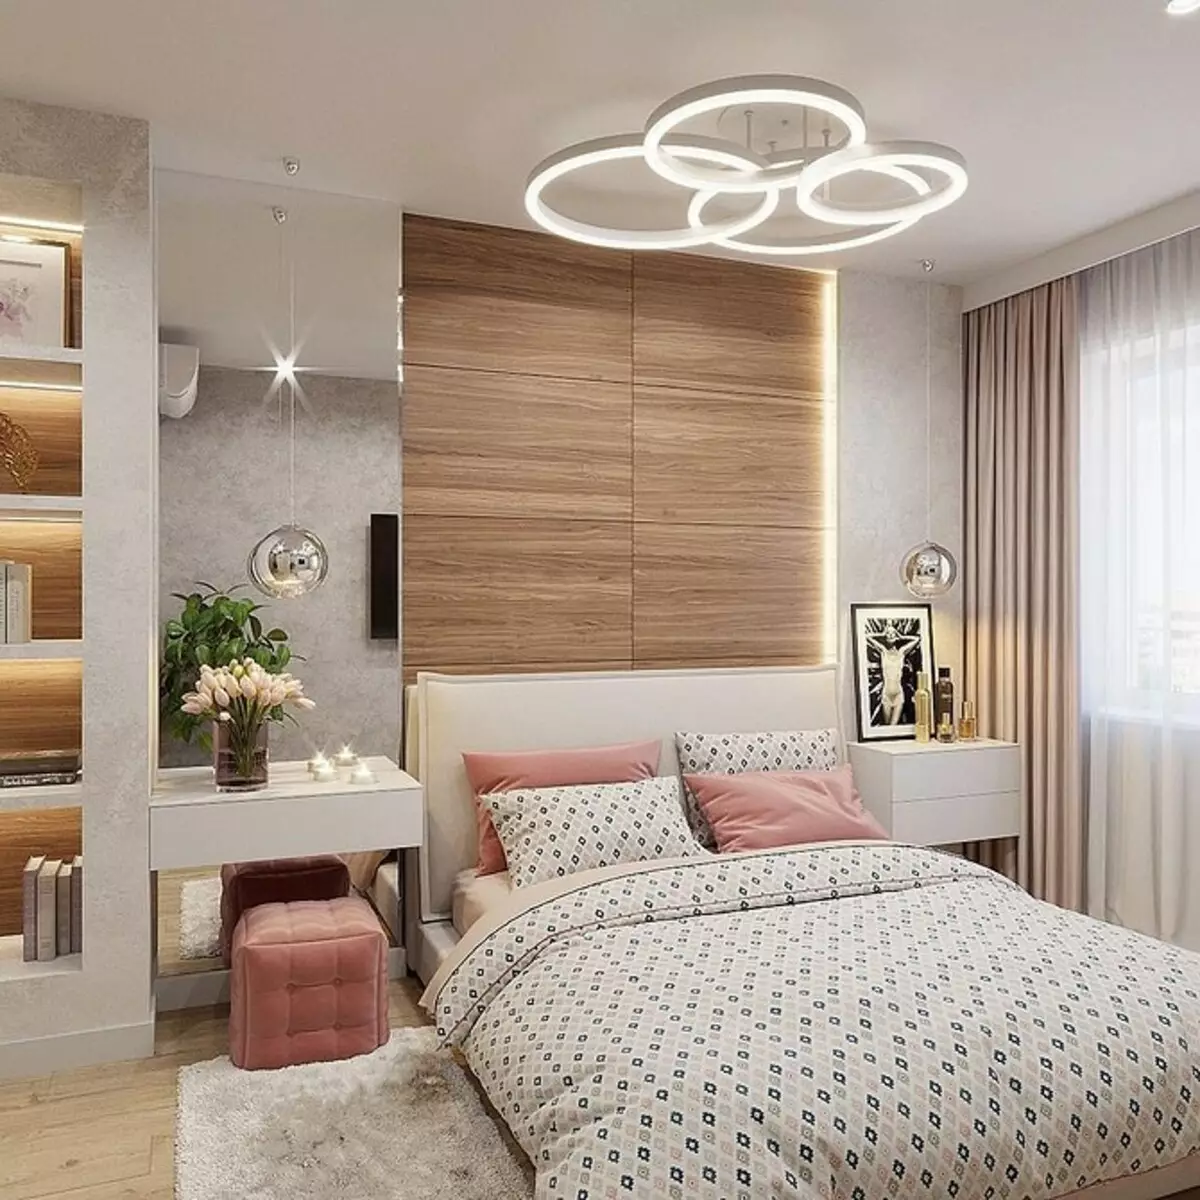 Come scegliere un lampadario in camera da letto: 5 consigli per coloro che vogliono organizzare una stanza giusta 9638_7